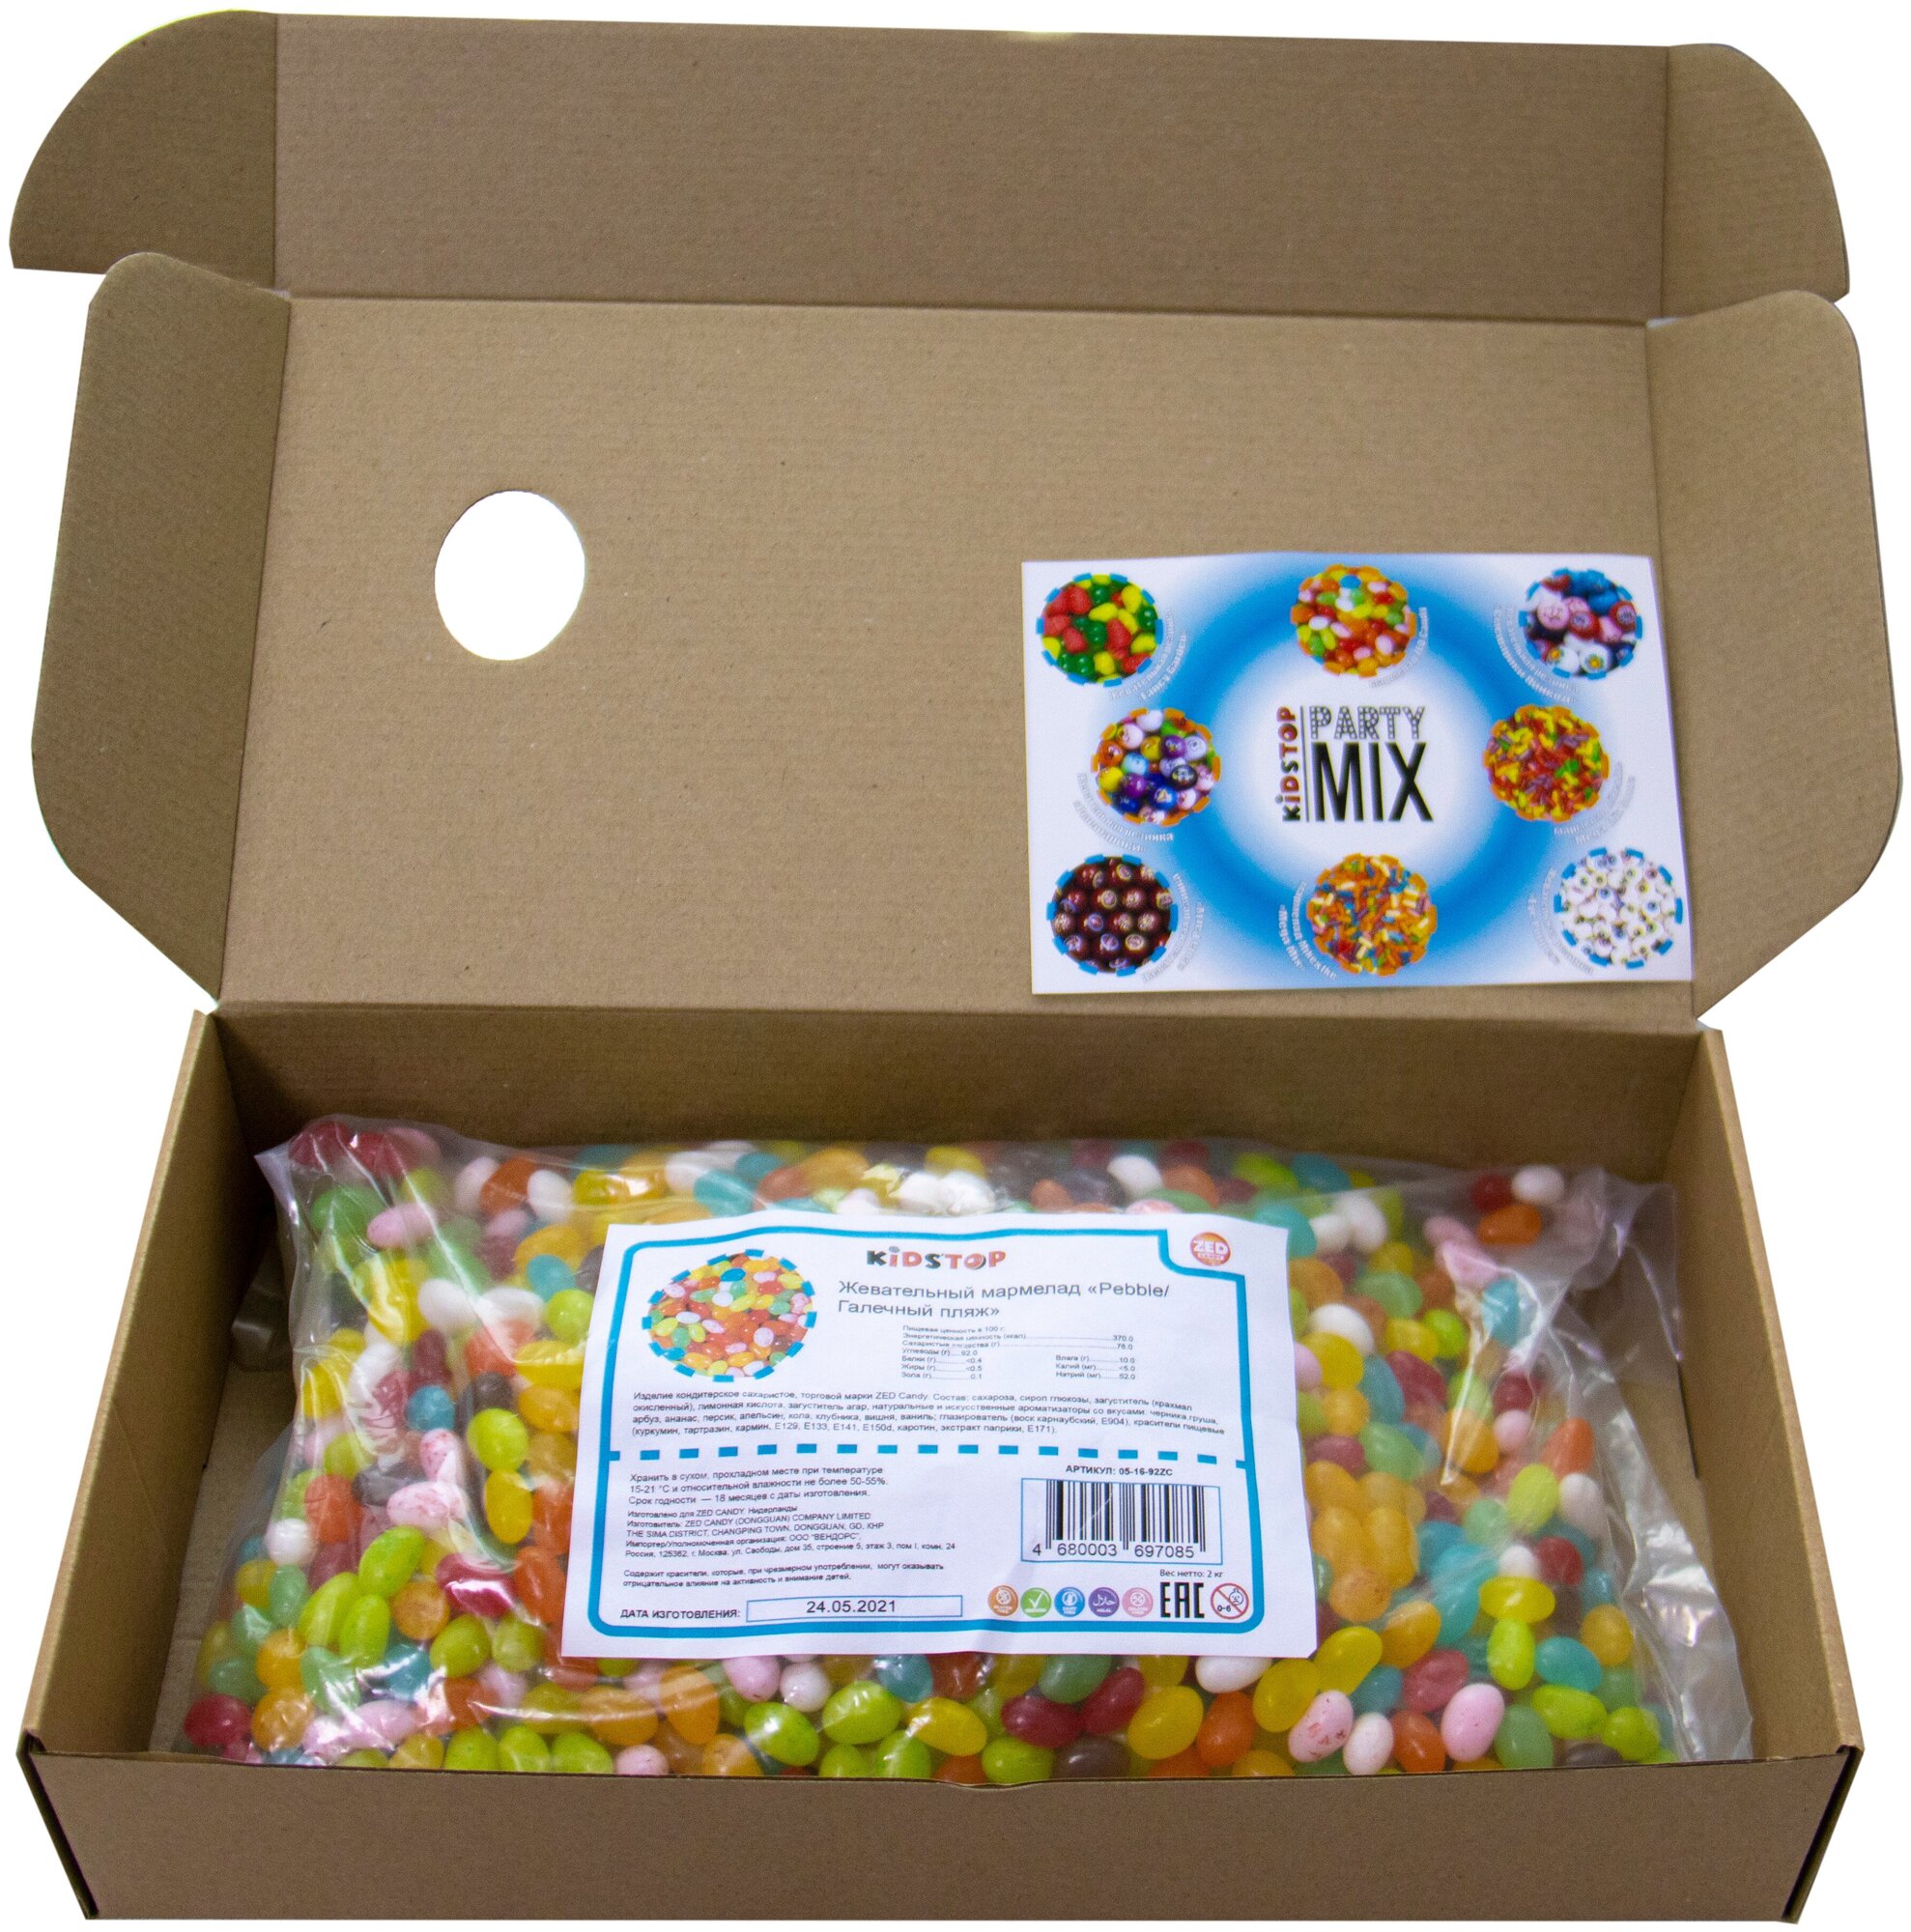 Мармелад жевательный "Pebble" от ZED Candy в упаковке 2 кг, (для праздников и торговых автоматов) - фотография № 2